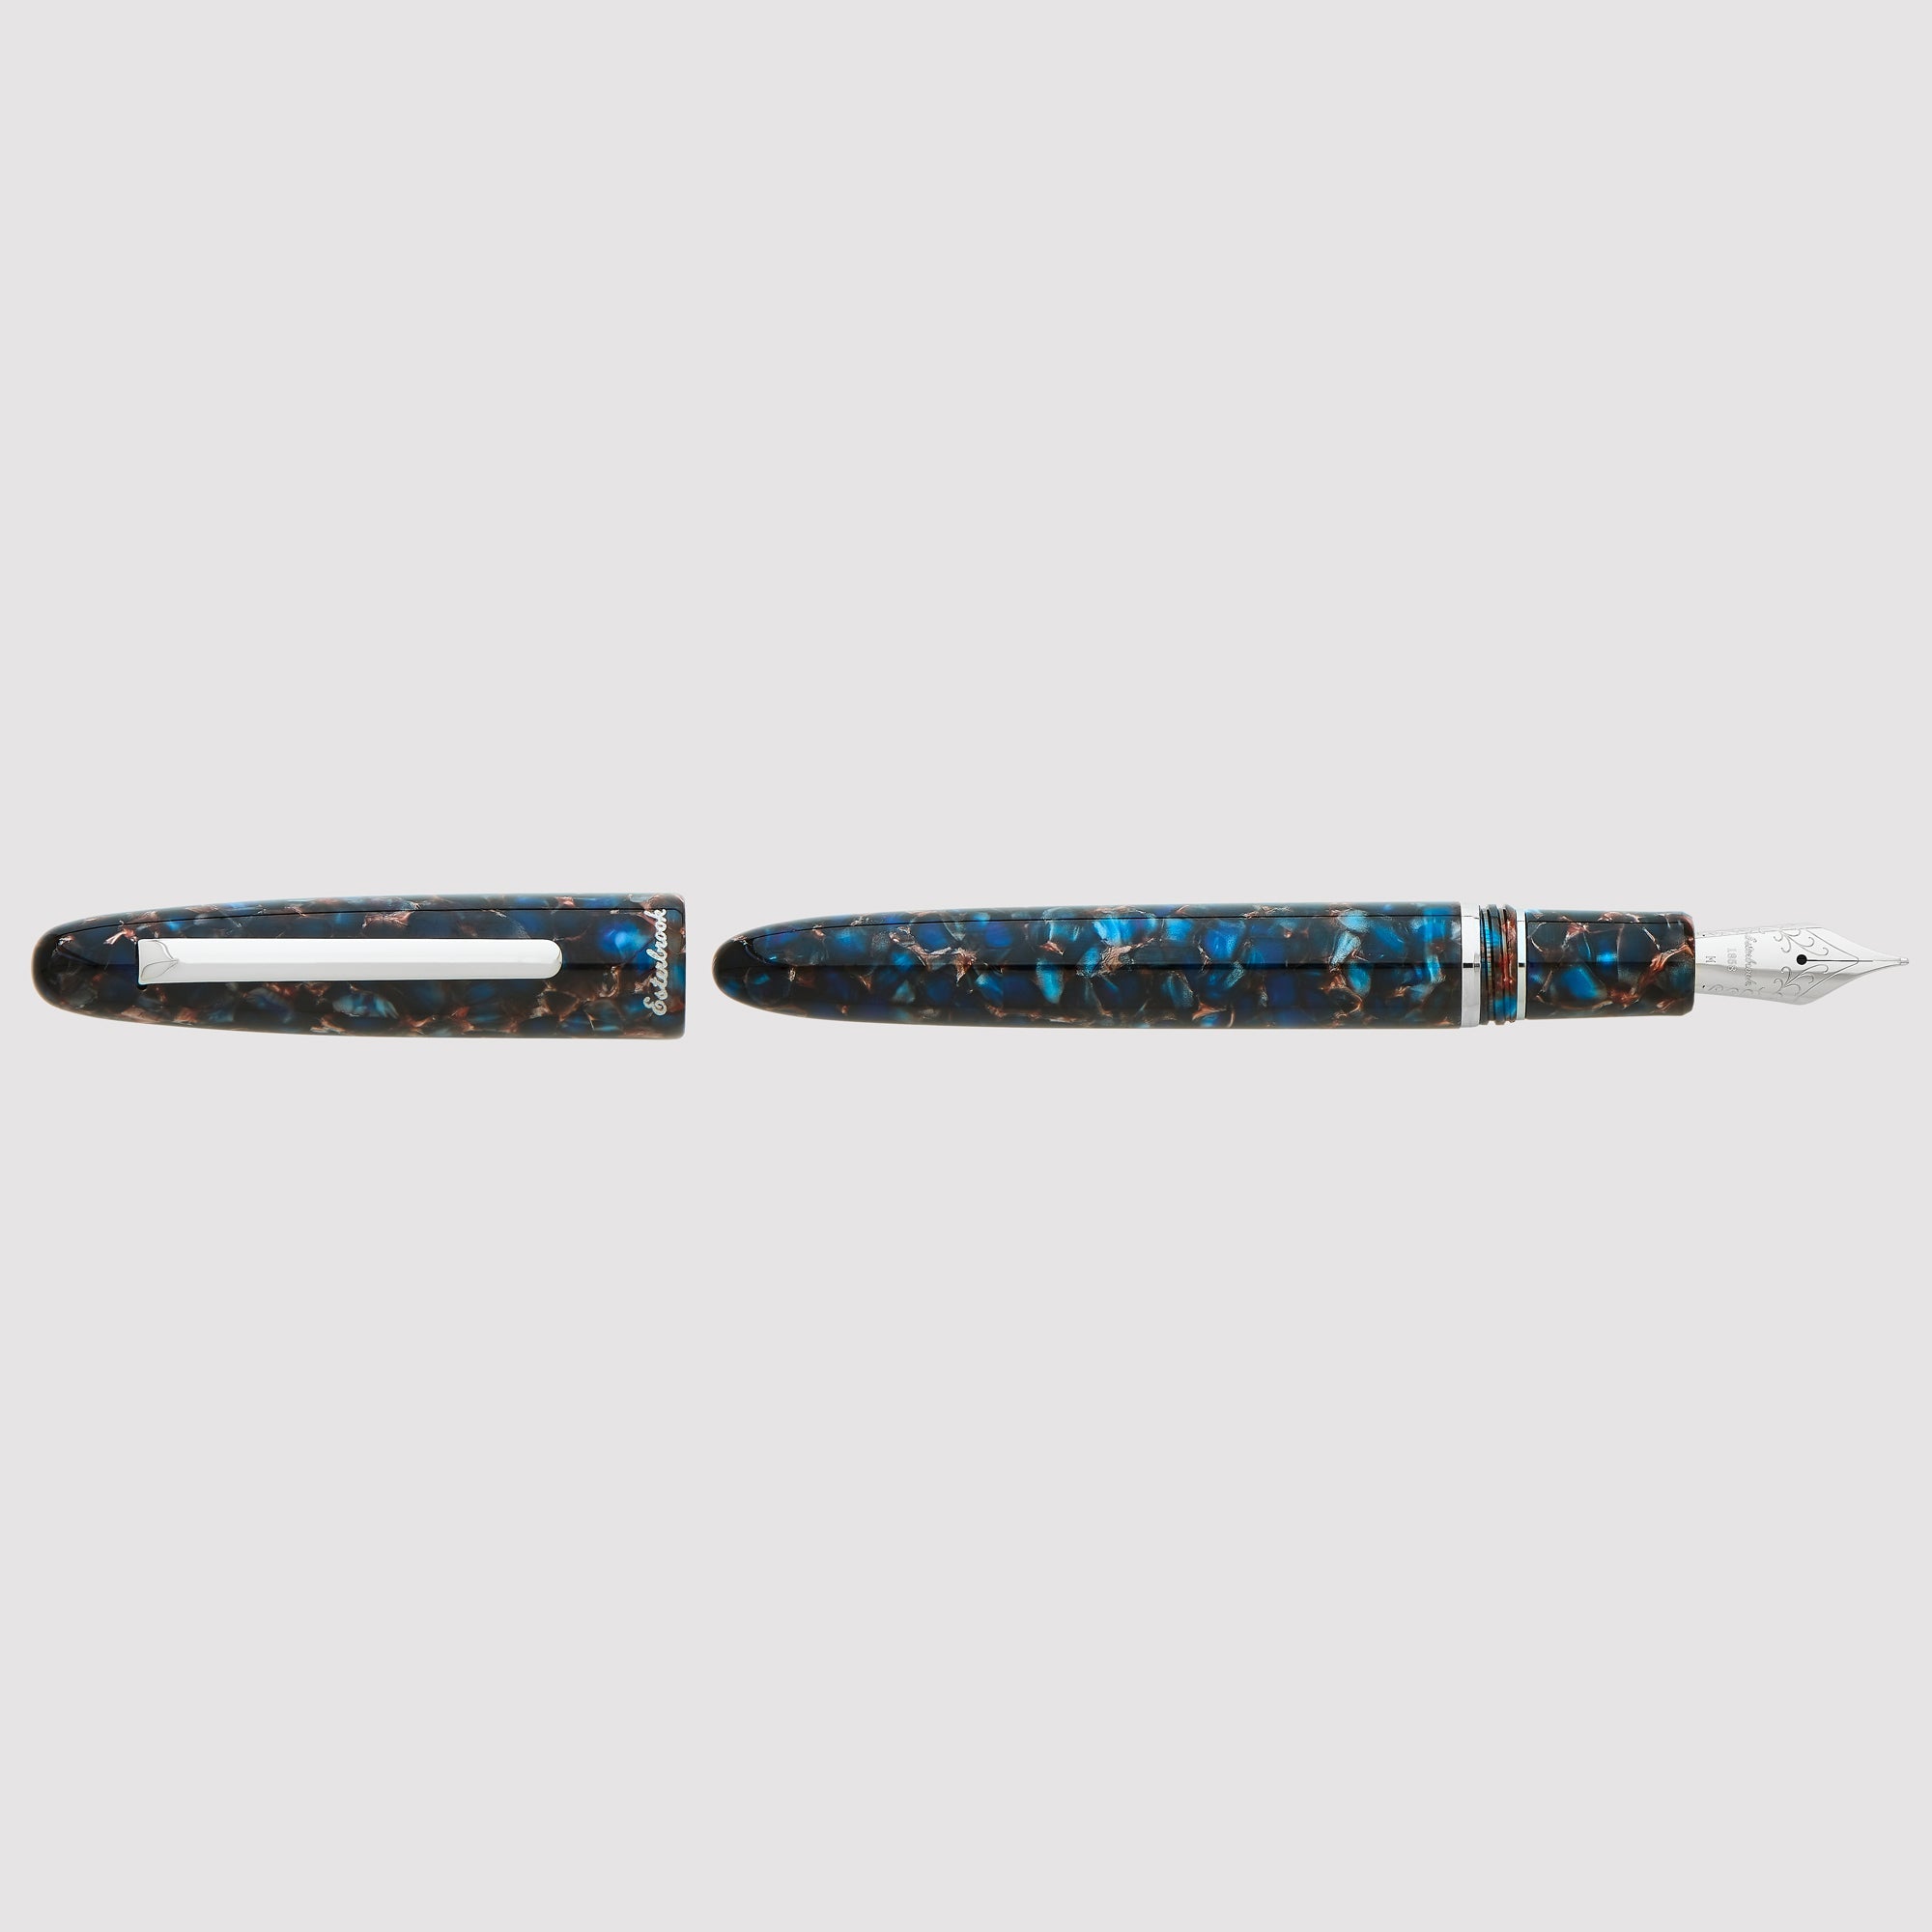 Esterbrook - Fountain Pen Estie Nouveau Bleu (Regular)